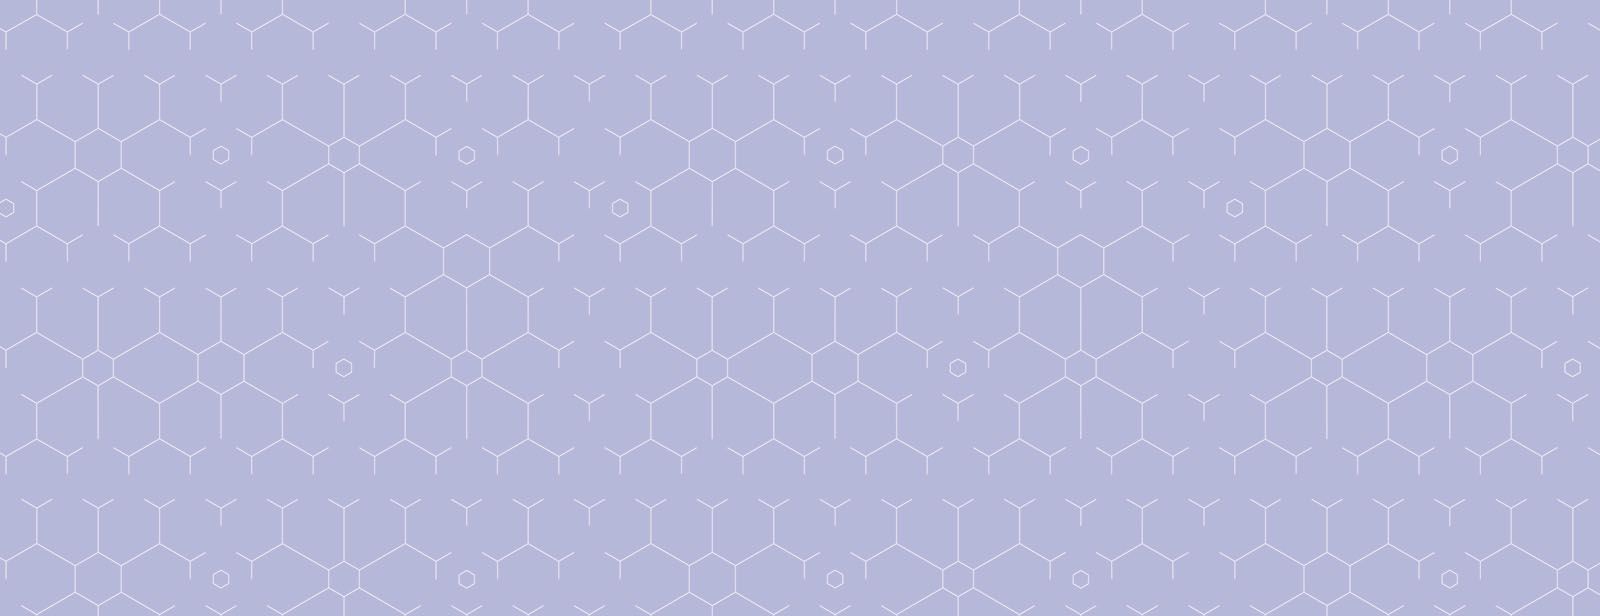 purple-hex-pattern